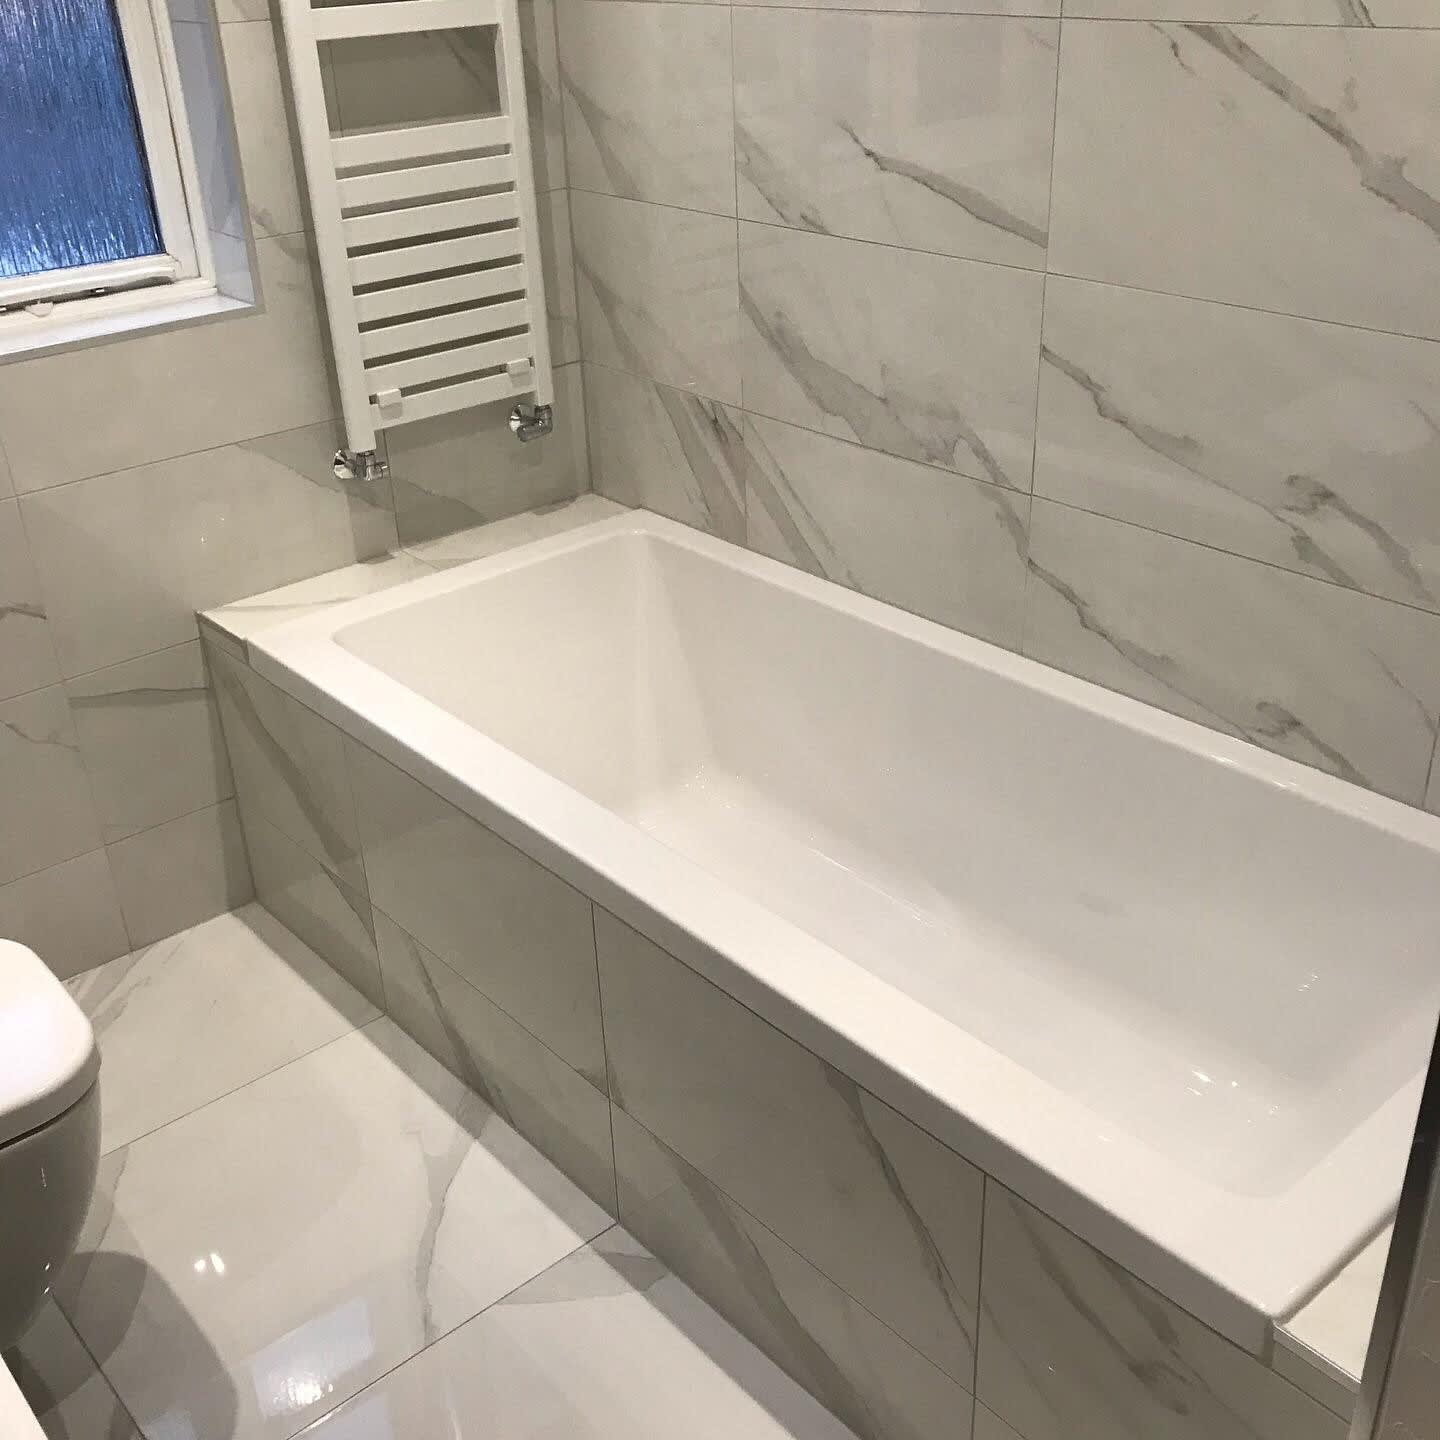 Images Bathroom I D Ltd